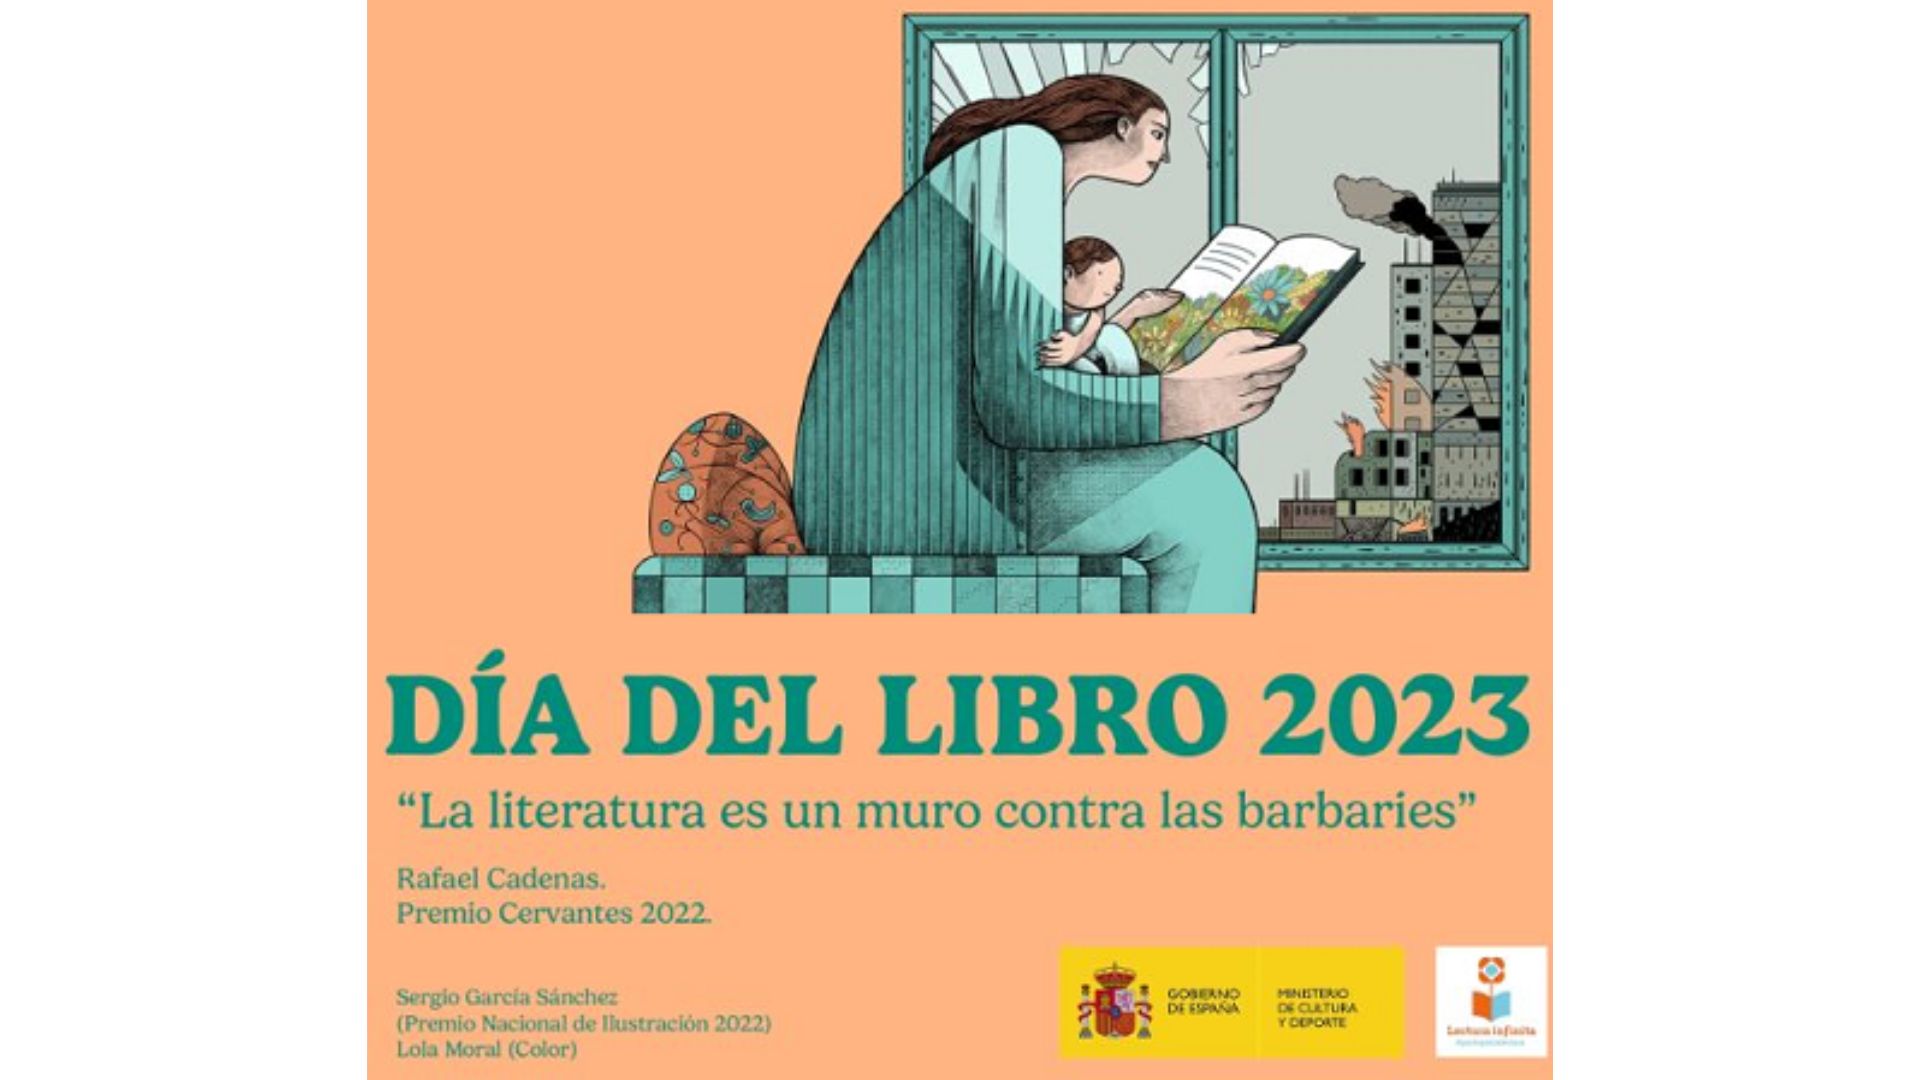 Imagen con cartel del Día del Libro 2023 